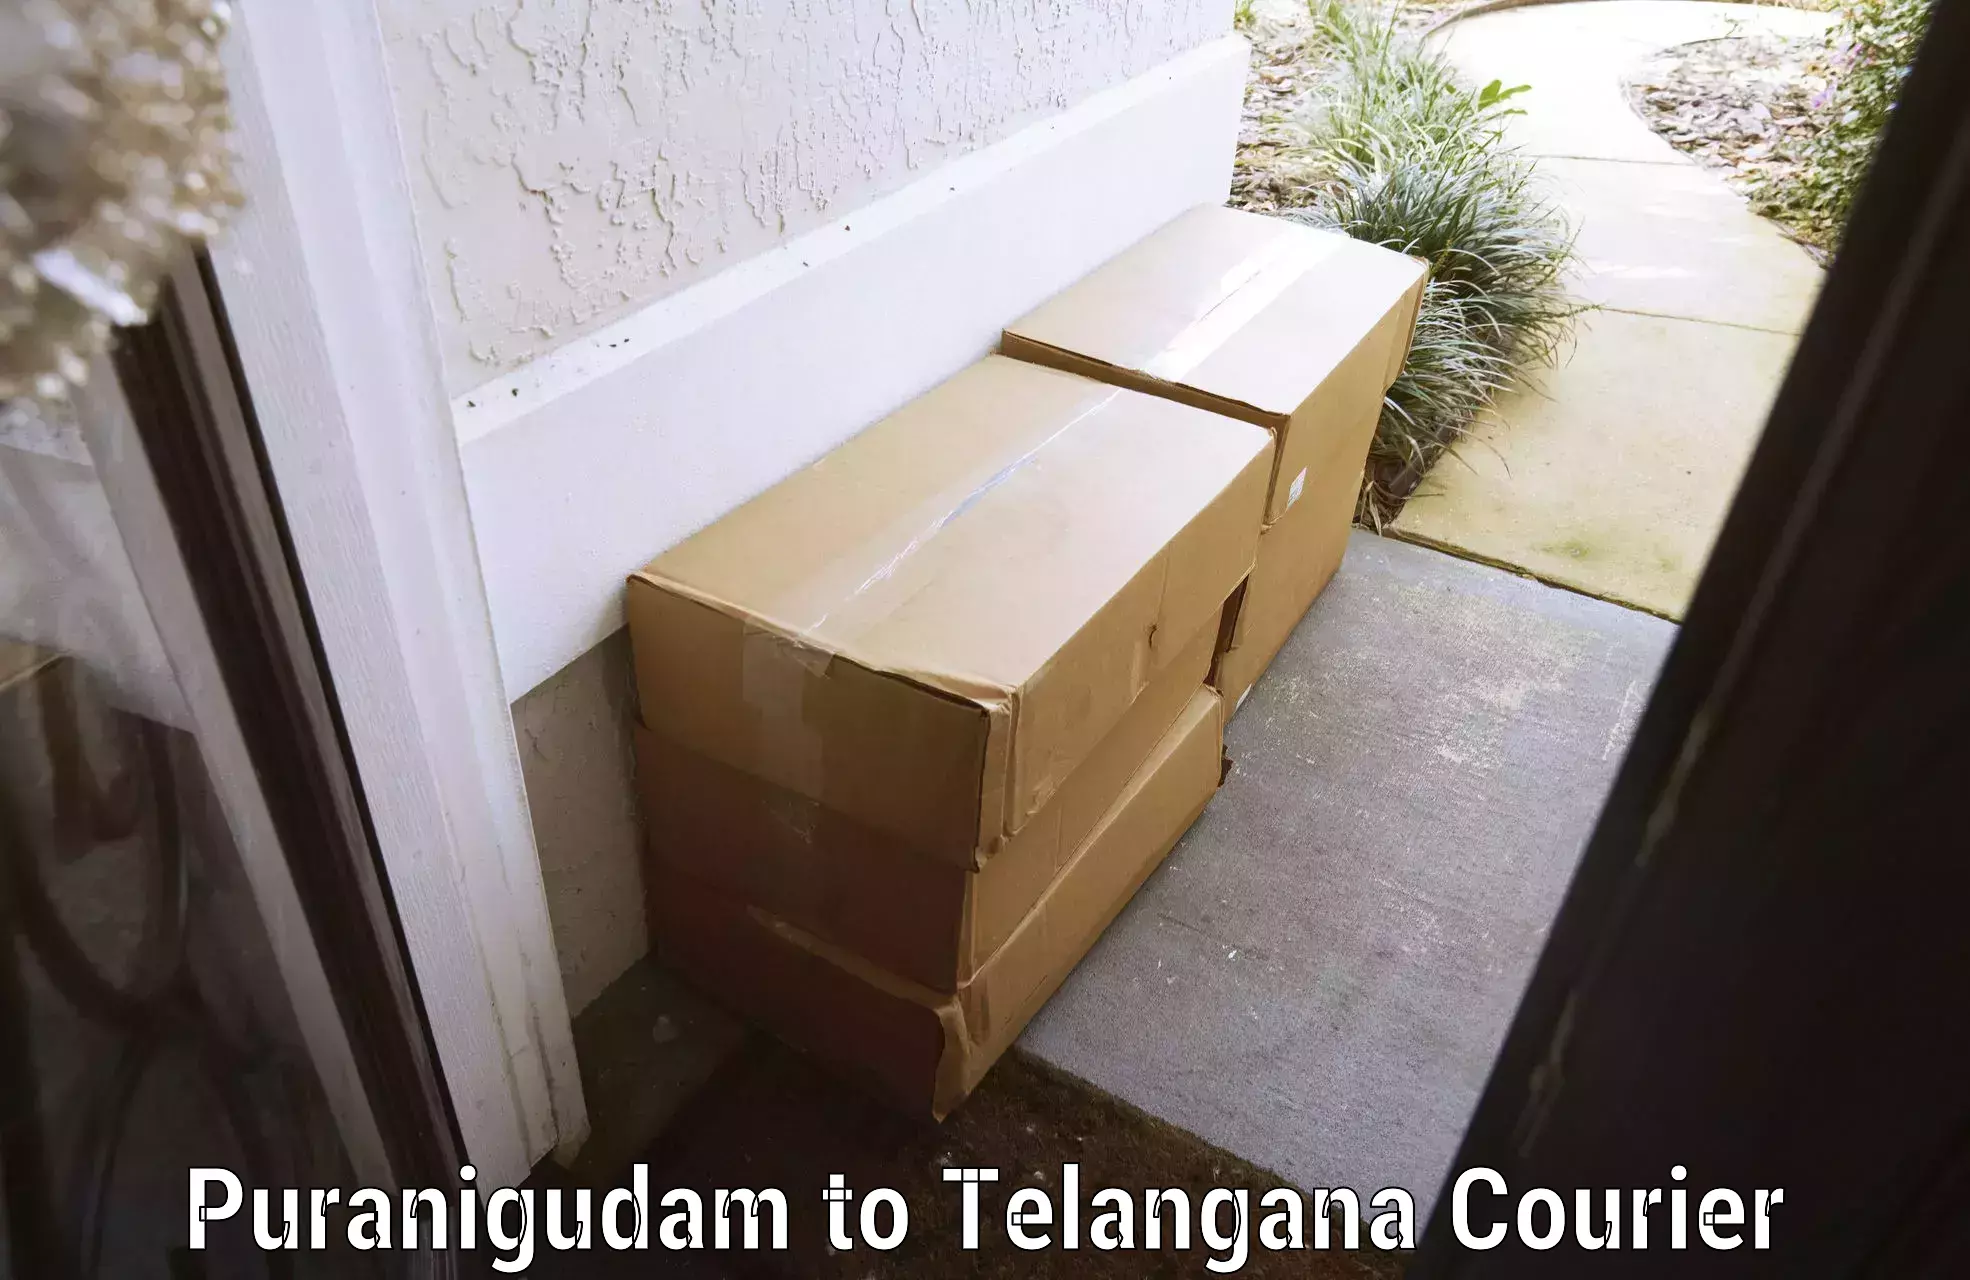 Urgent luggage shipment Puranigudam to Bhainsa